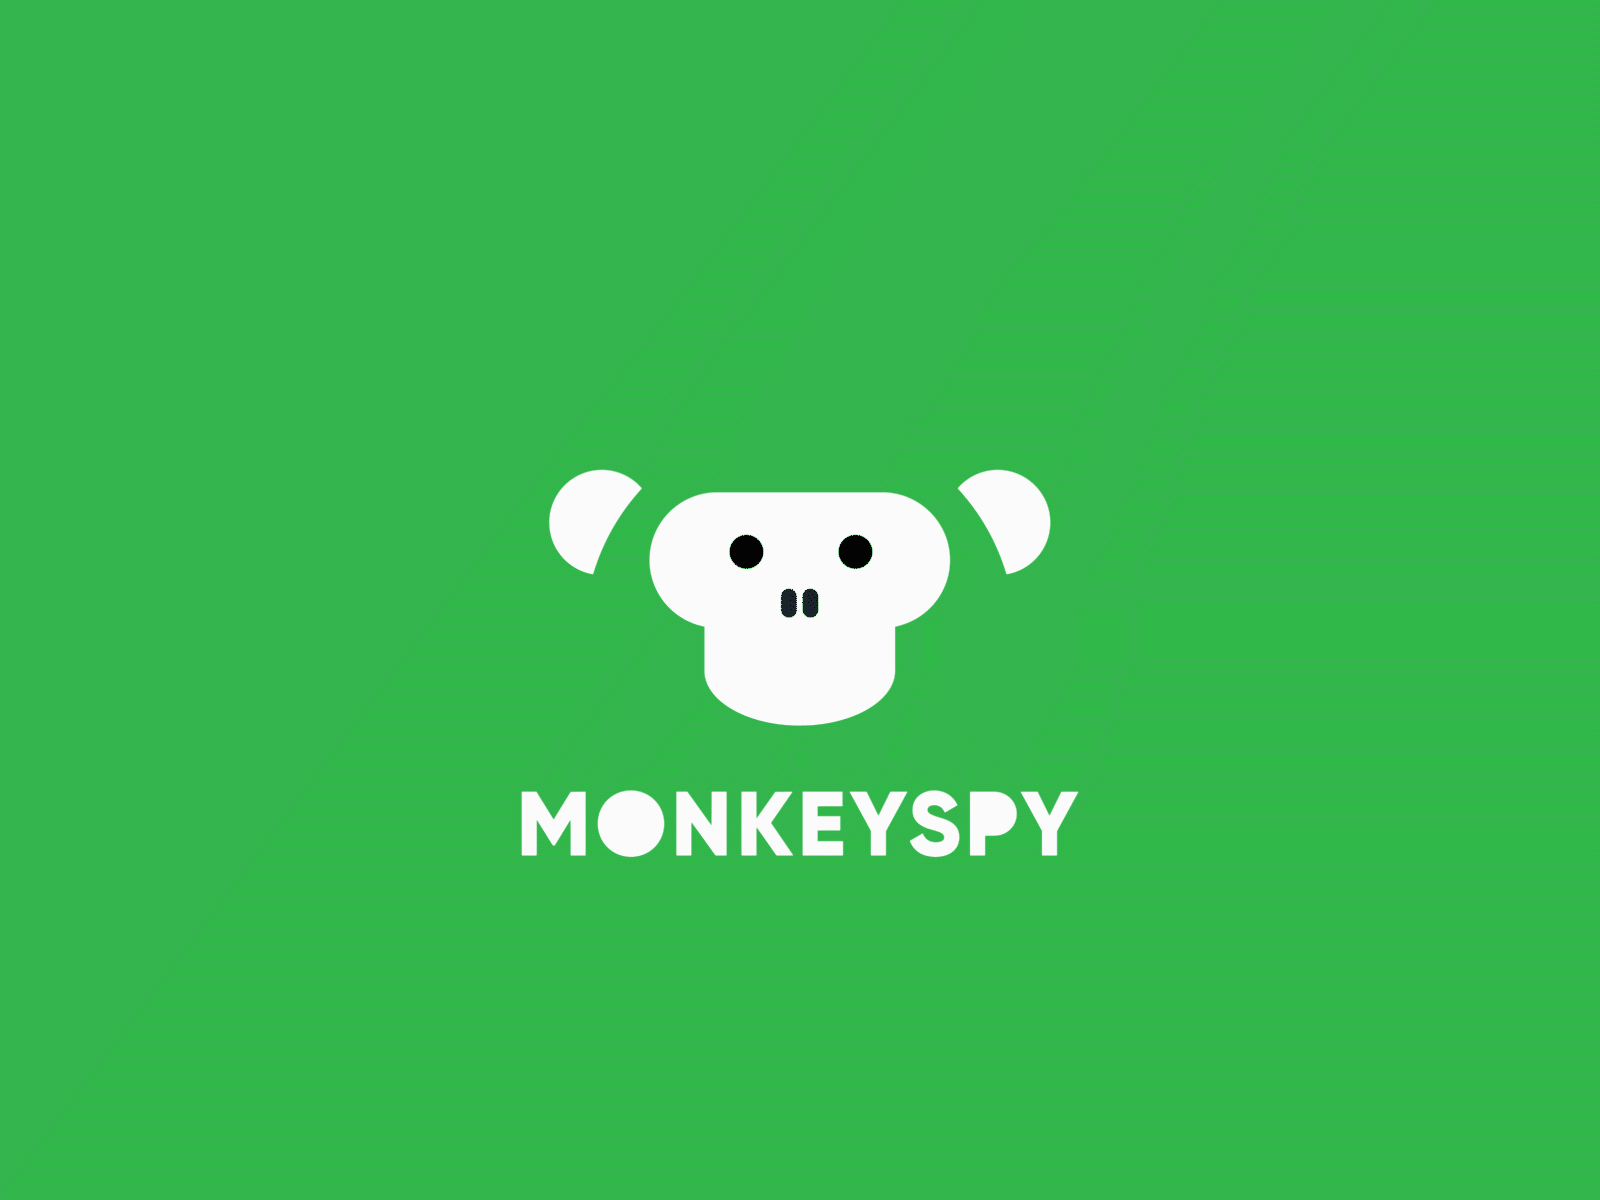 MONKEYSPY Logo Animation